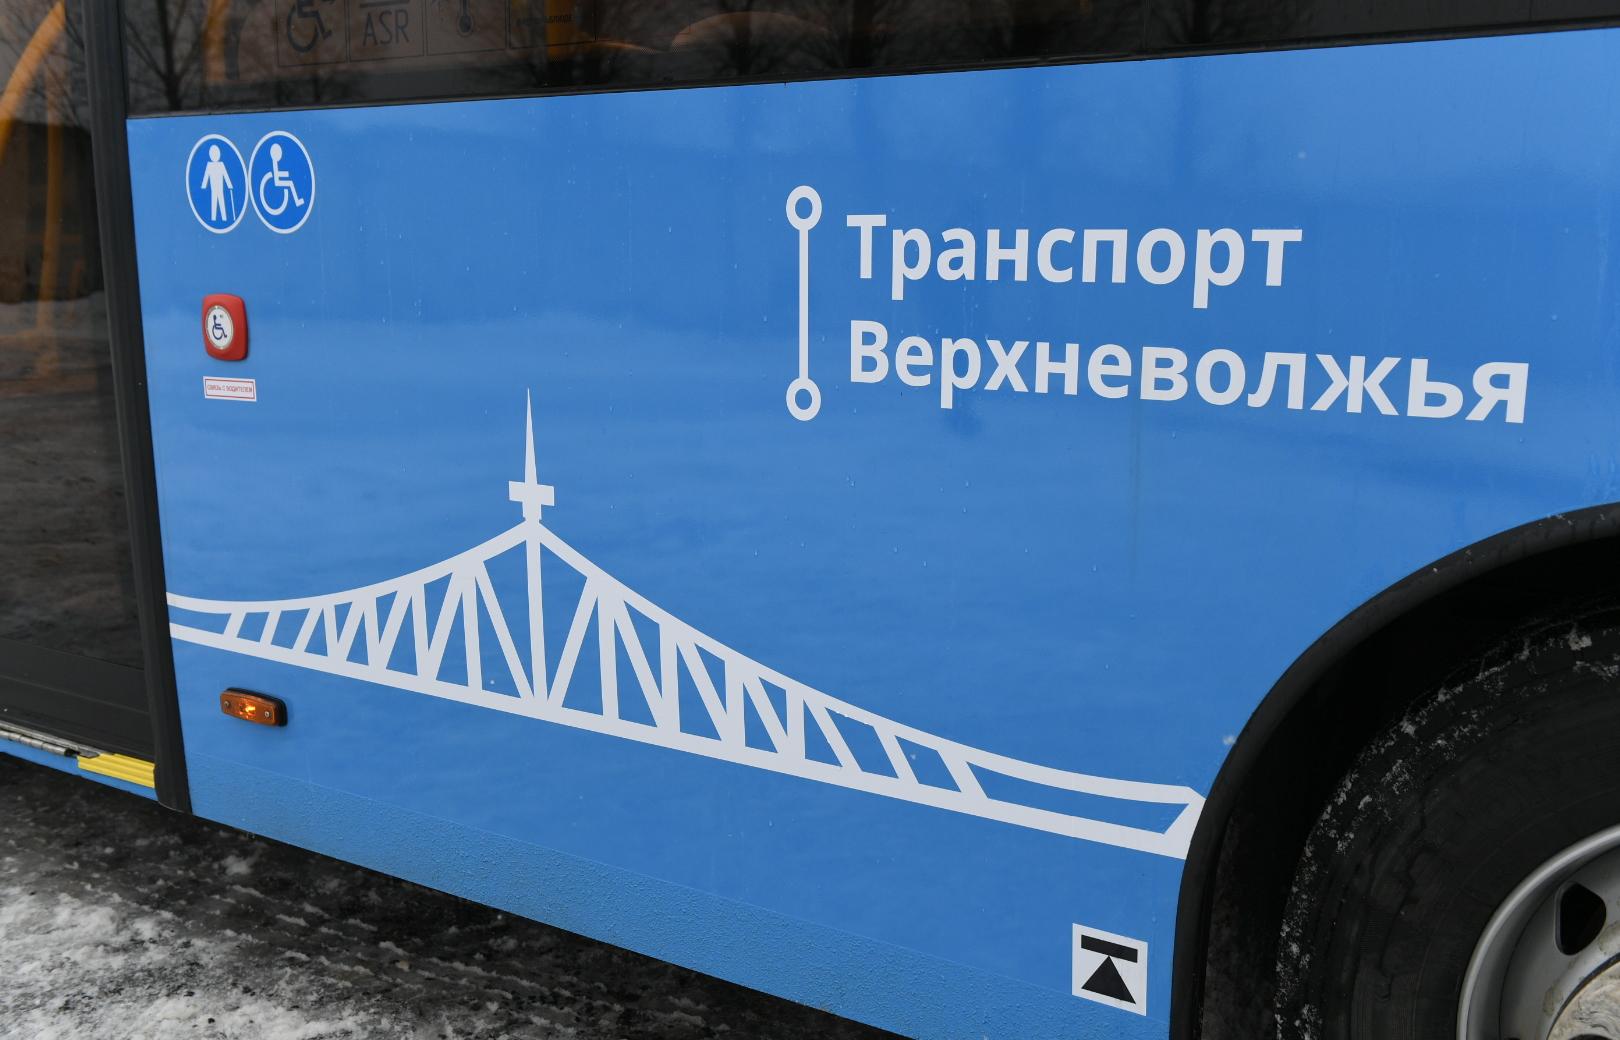 В Твери и Тверской области с 1 февраля несколько автобусов поменяют маршруты и расписание